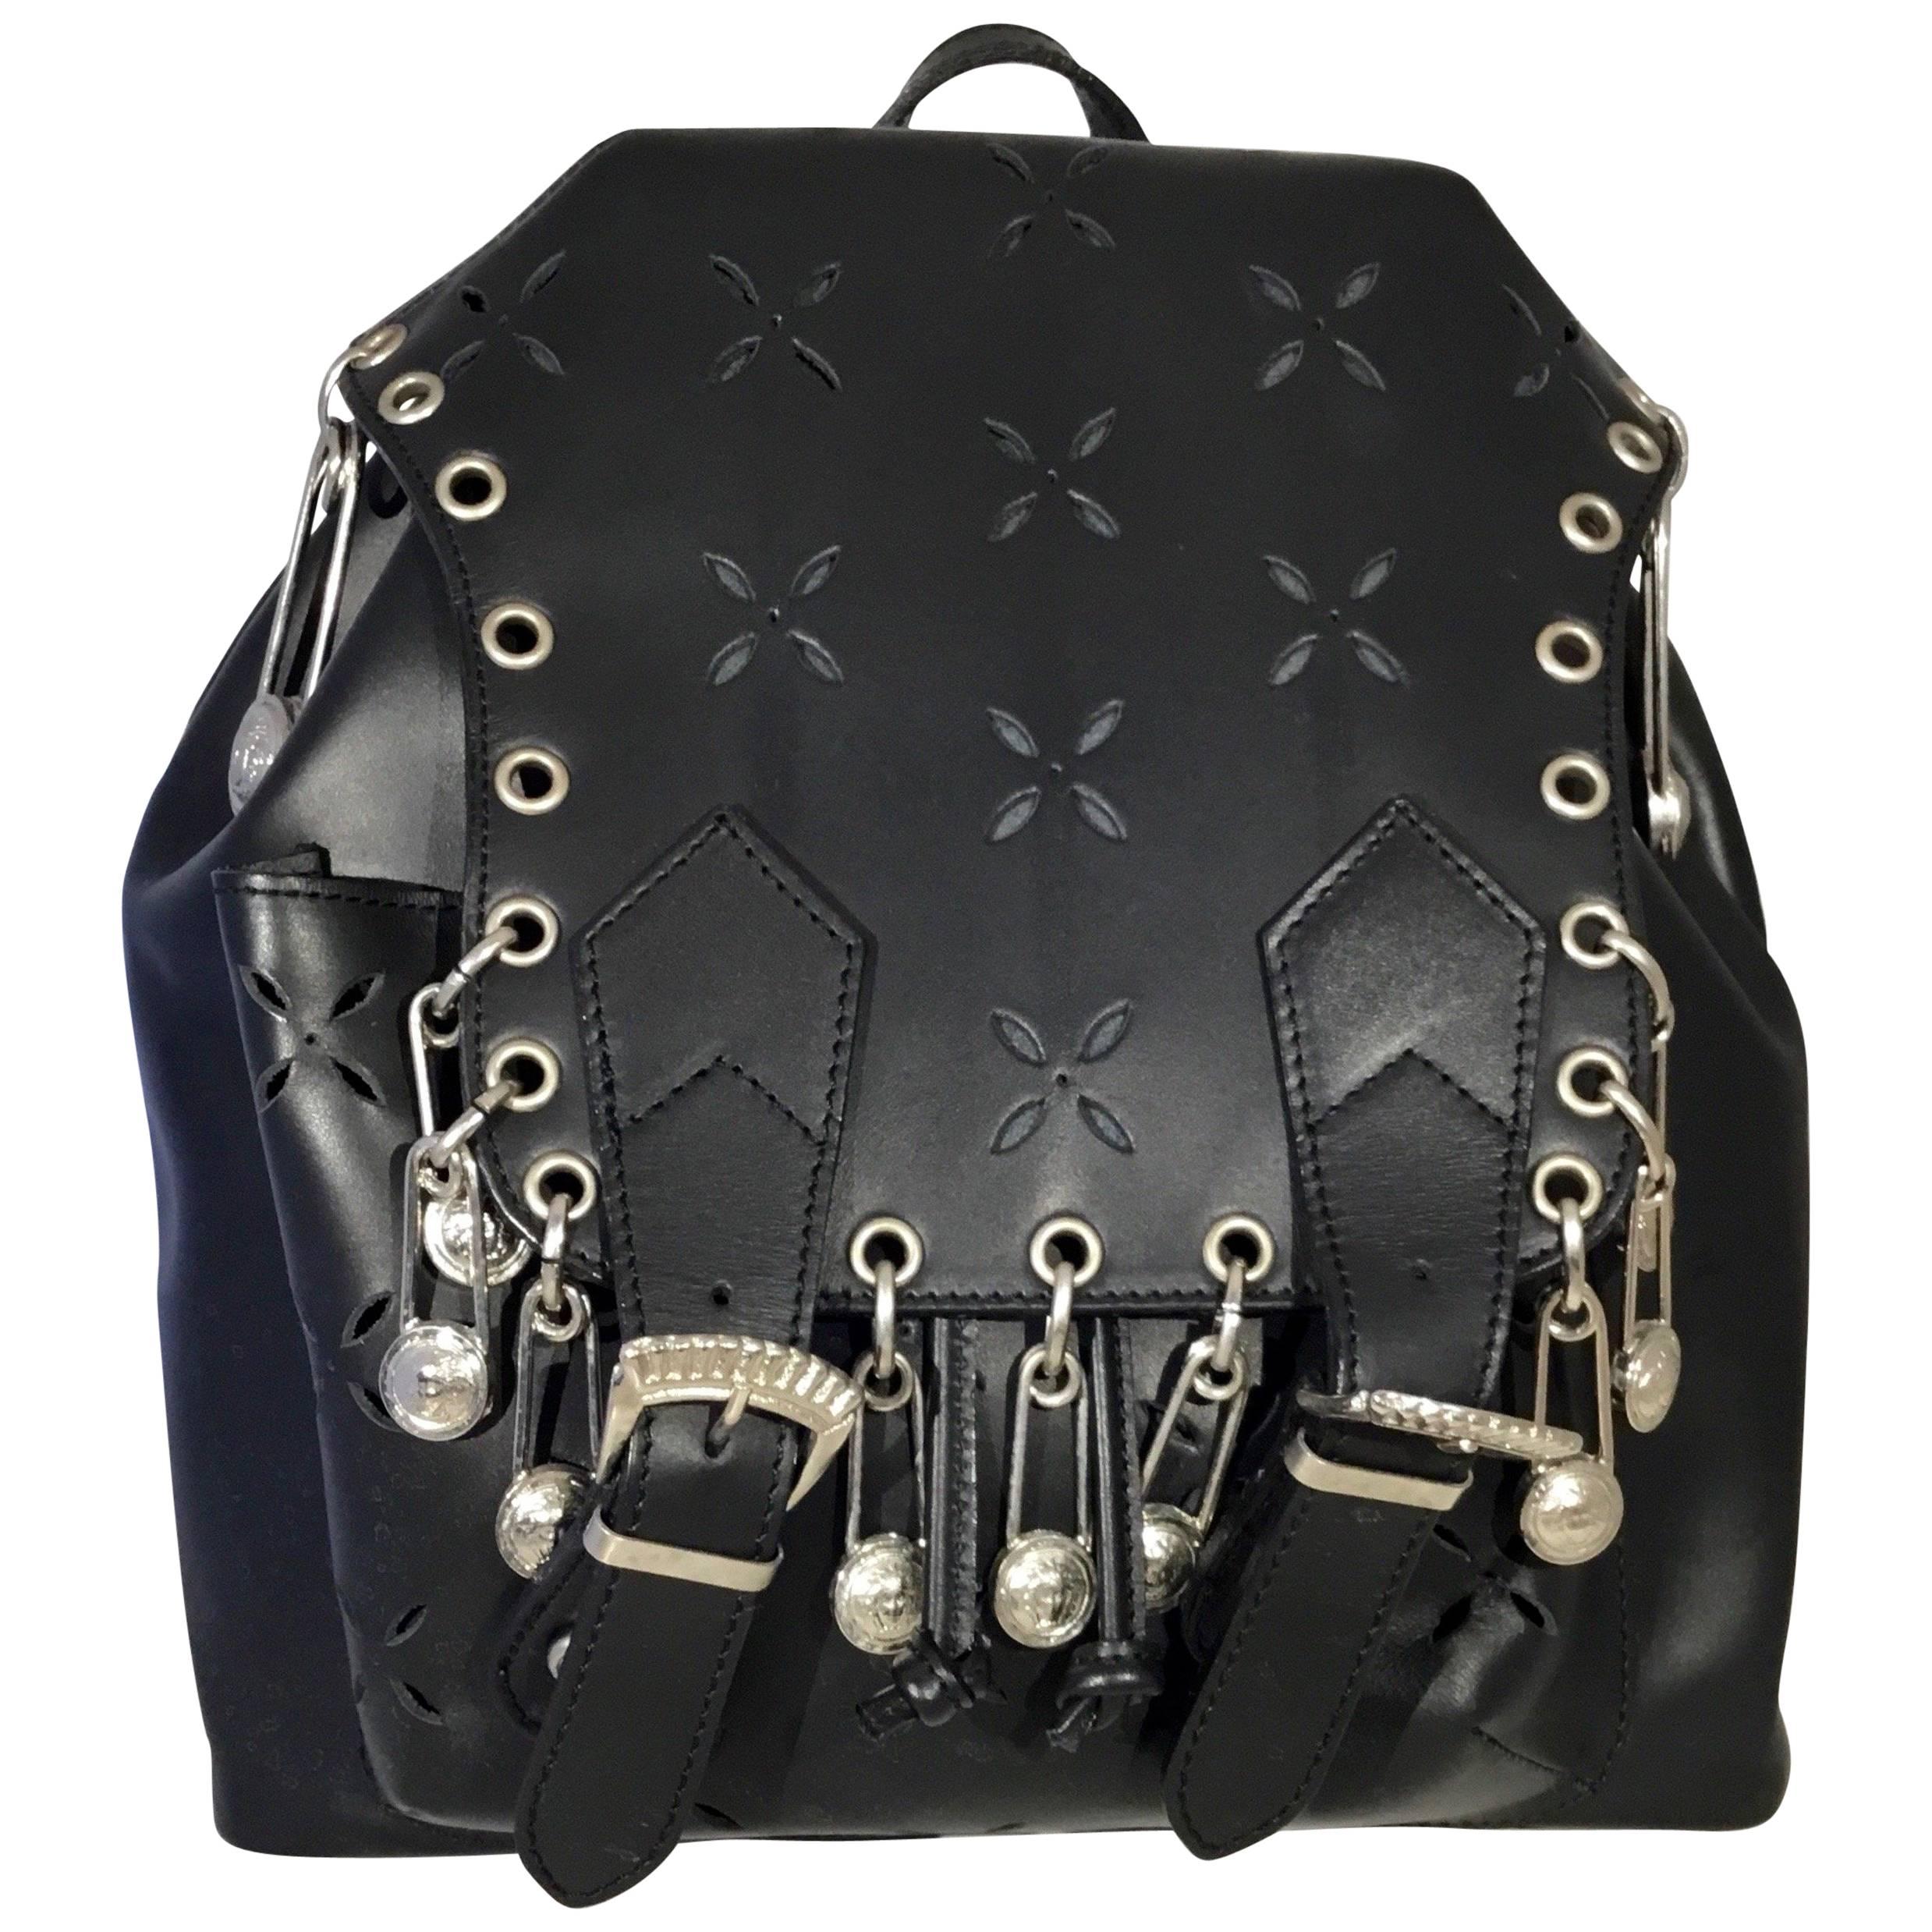 Gianni Versace 1994 Medusa Safety Pin Vintage Backpack Bag